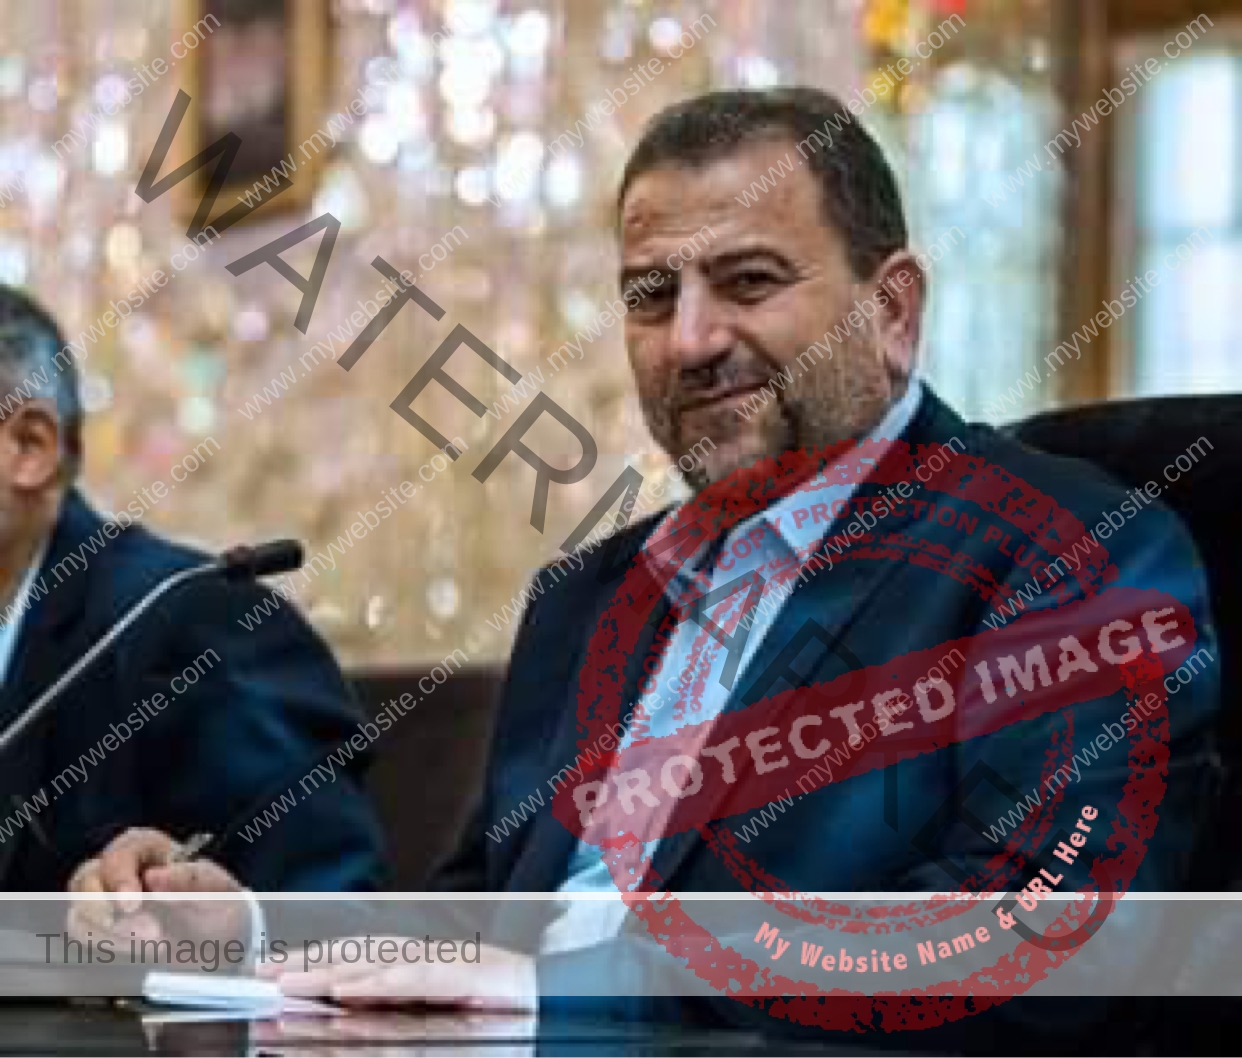 إصابة صالح العاروري نائب رئيس المكتب السياسي لحركة "حماس" بـ كورونا